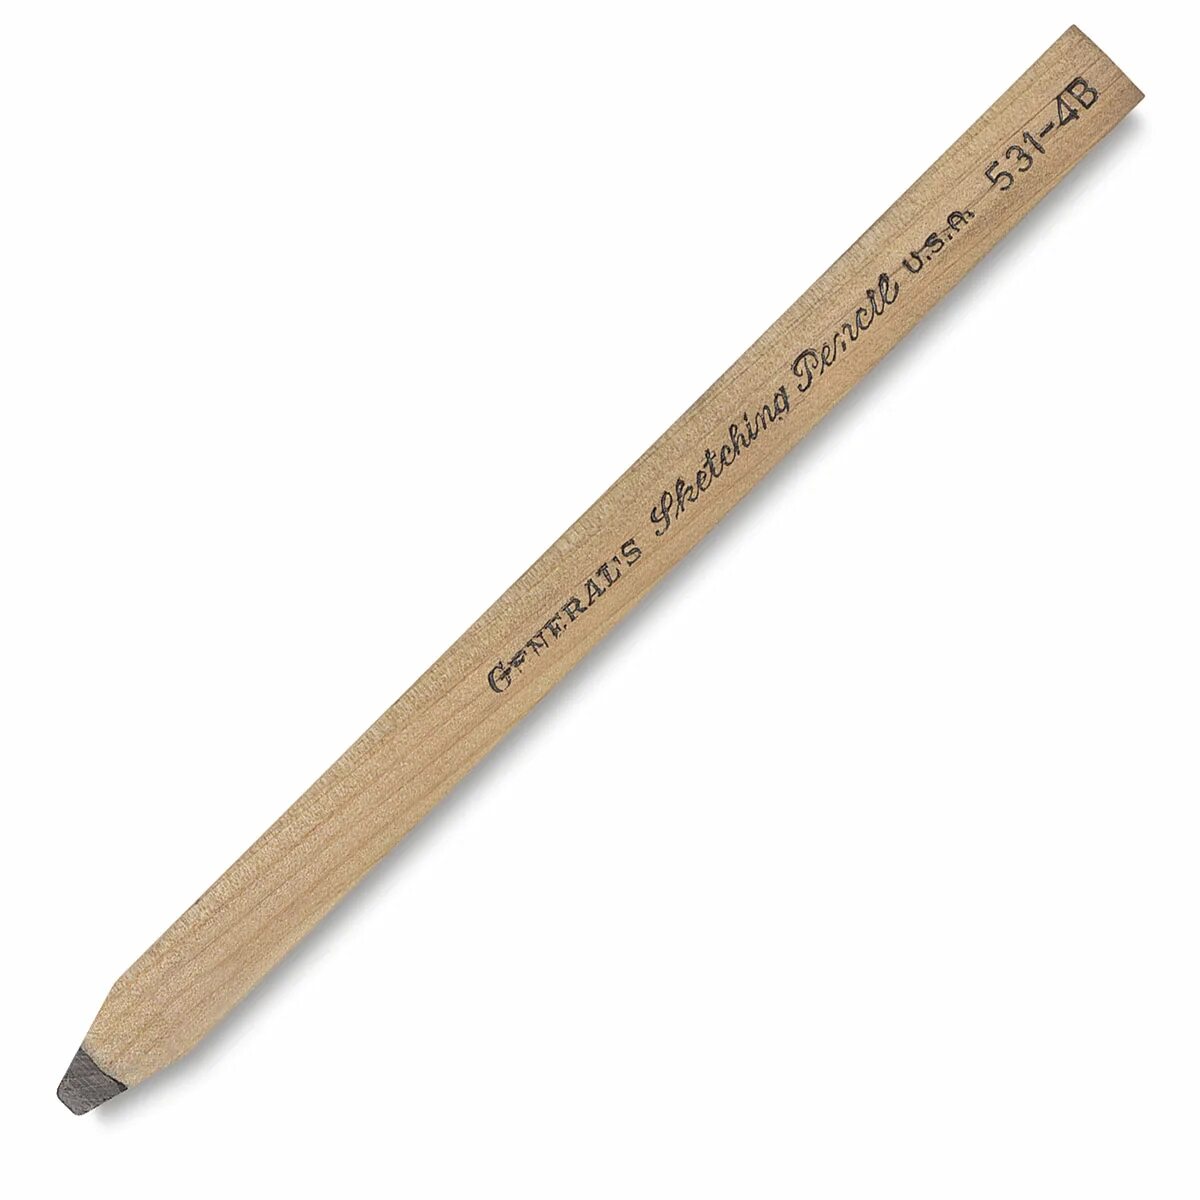 Плоский карандаш. Плоский карандаш для рисования. Карандаш плоский строительный. Столярный карандаш.